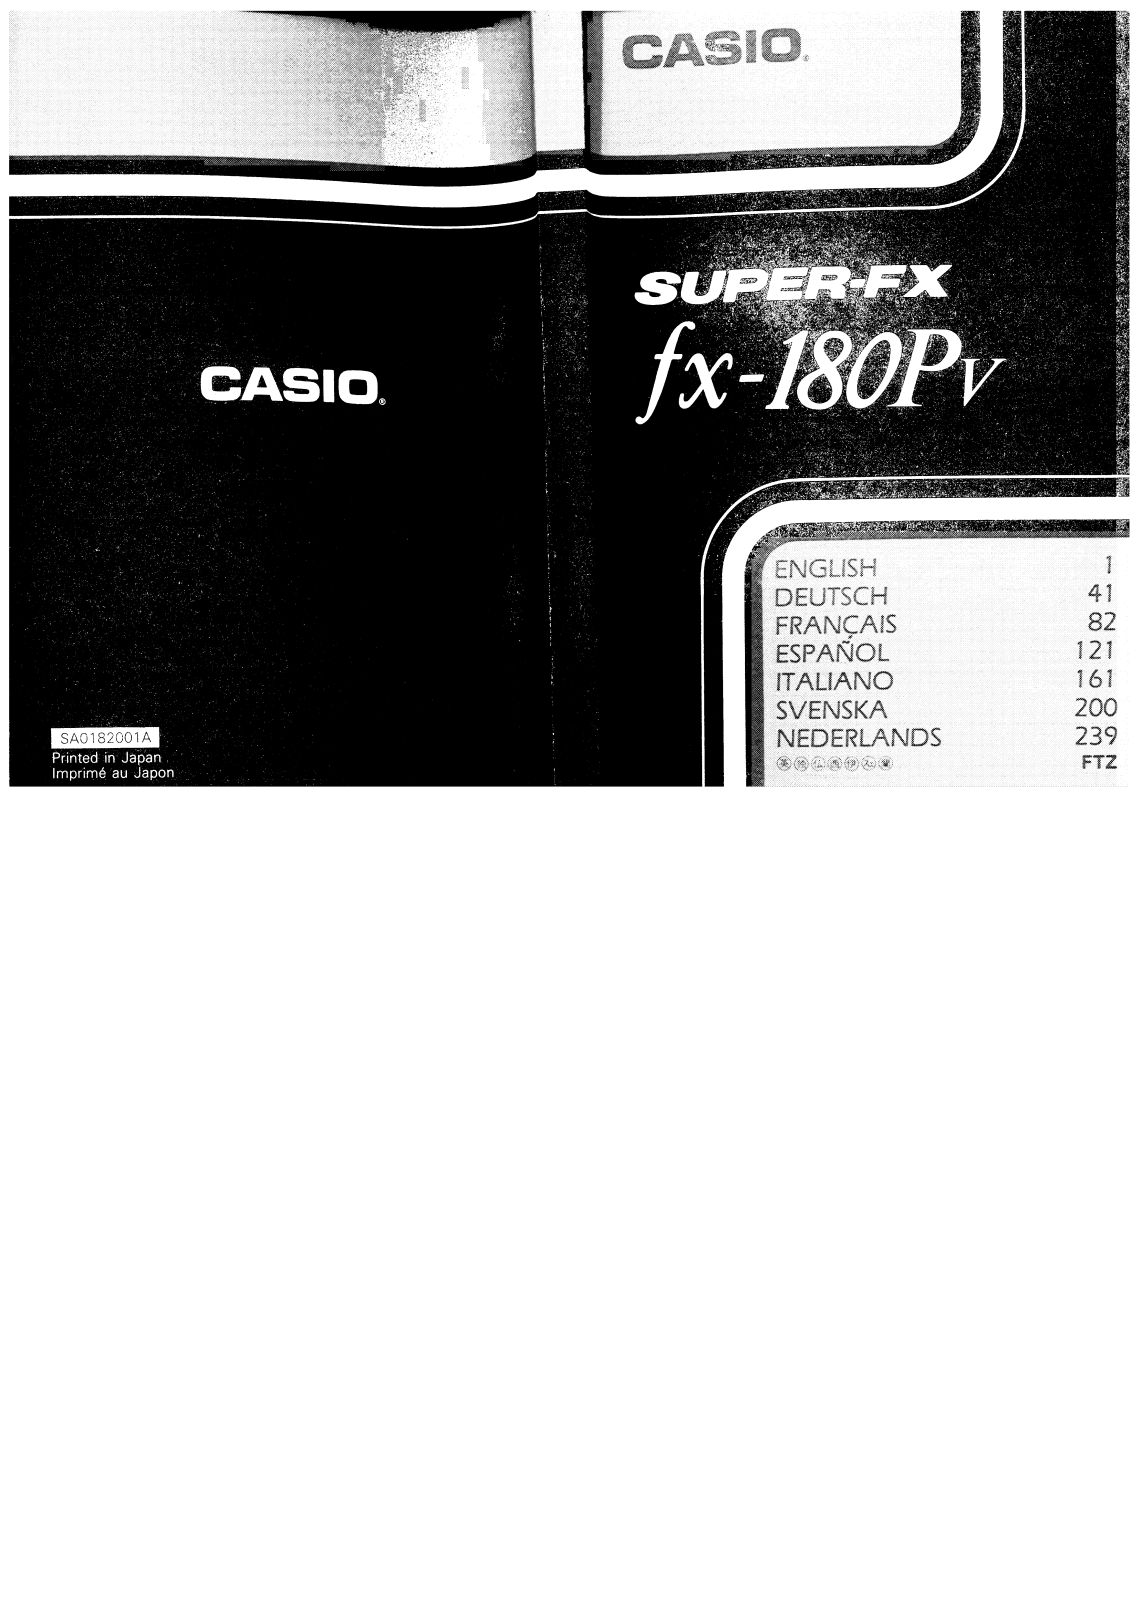 CASIO FX 180PV User Manual